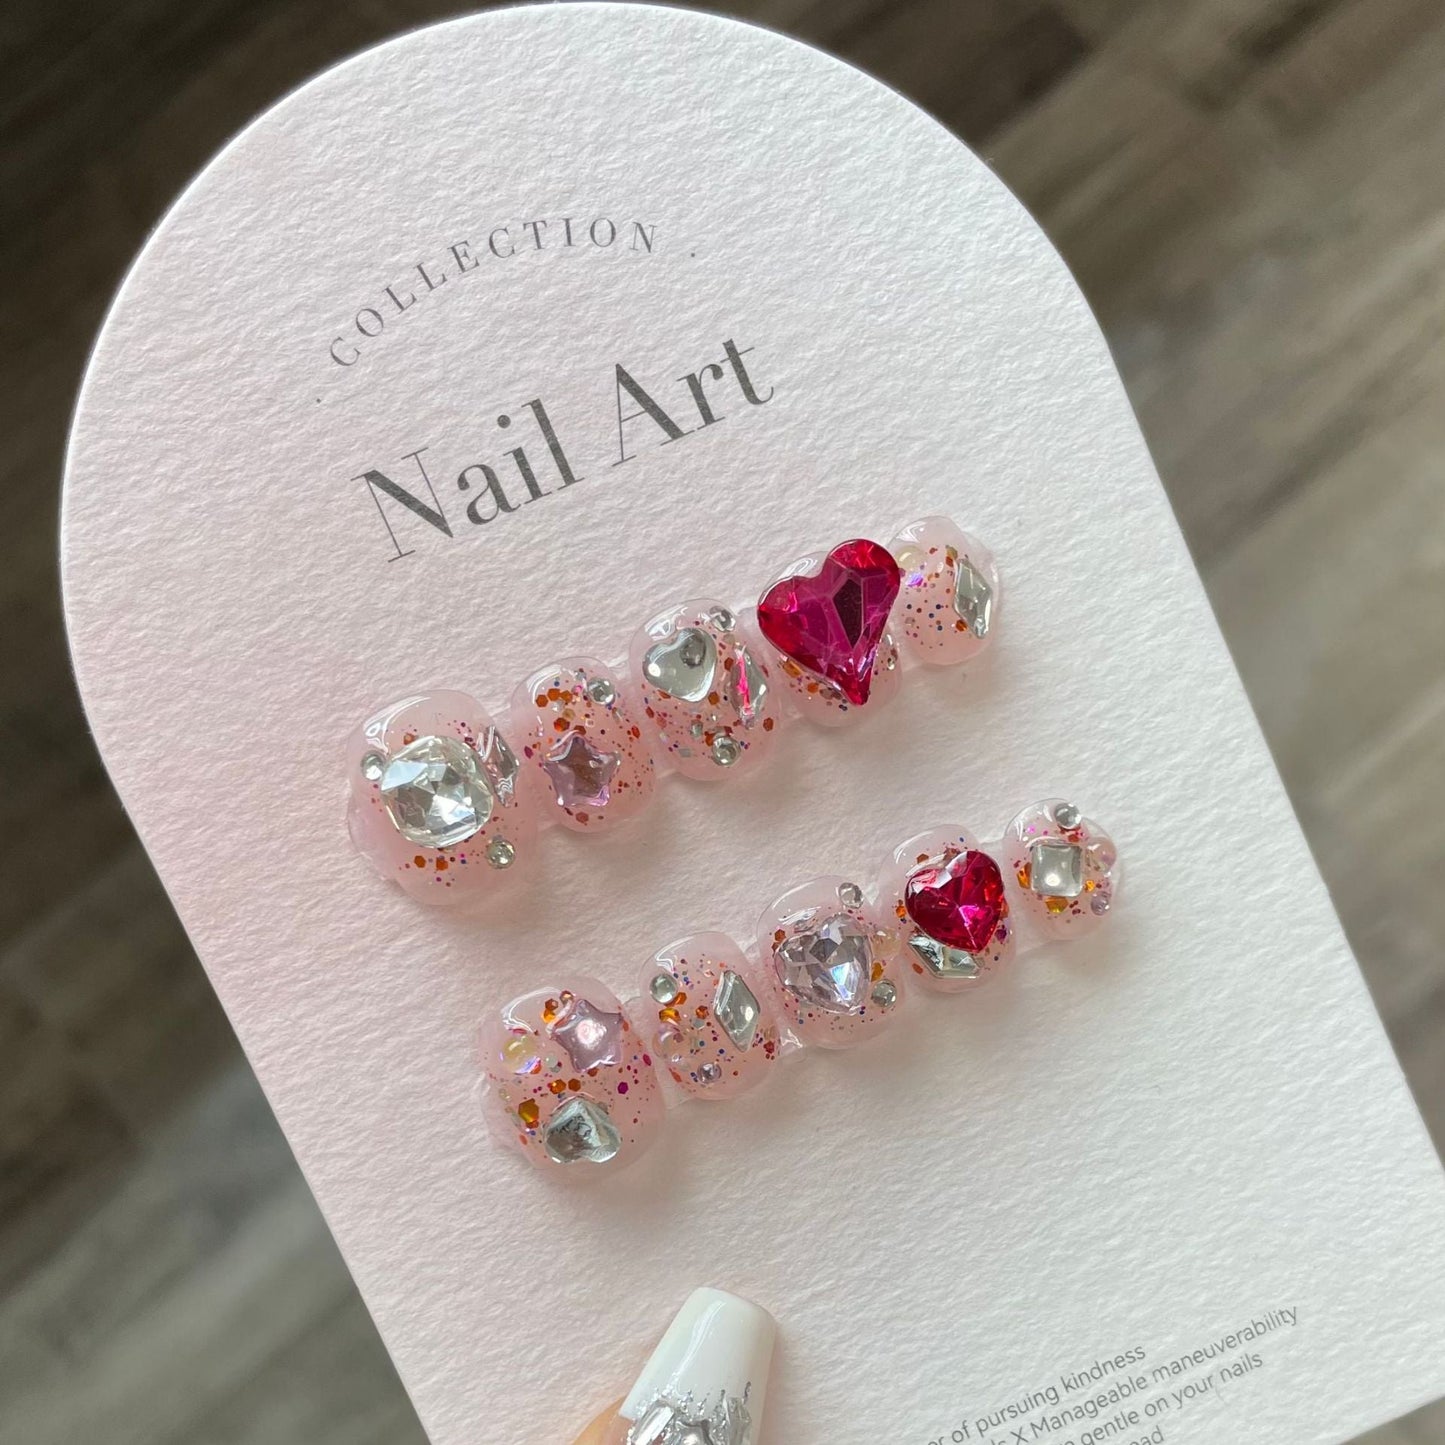 780 Strass-stijl pers op nagels 100% handgemaakte kunstnagels roze